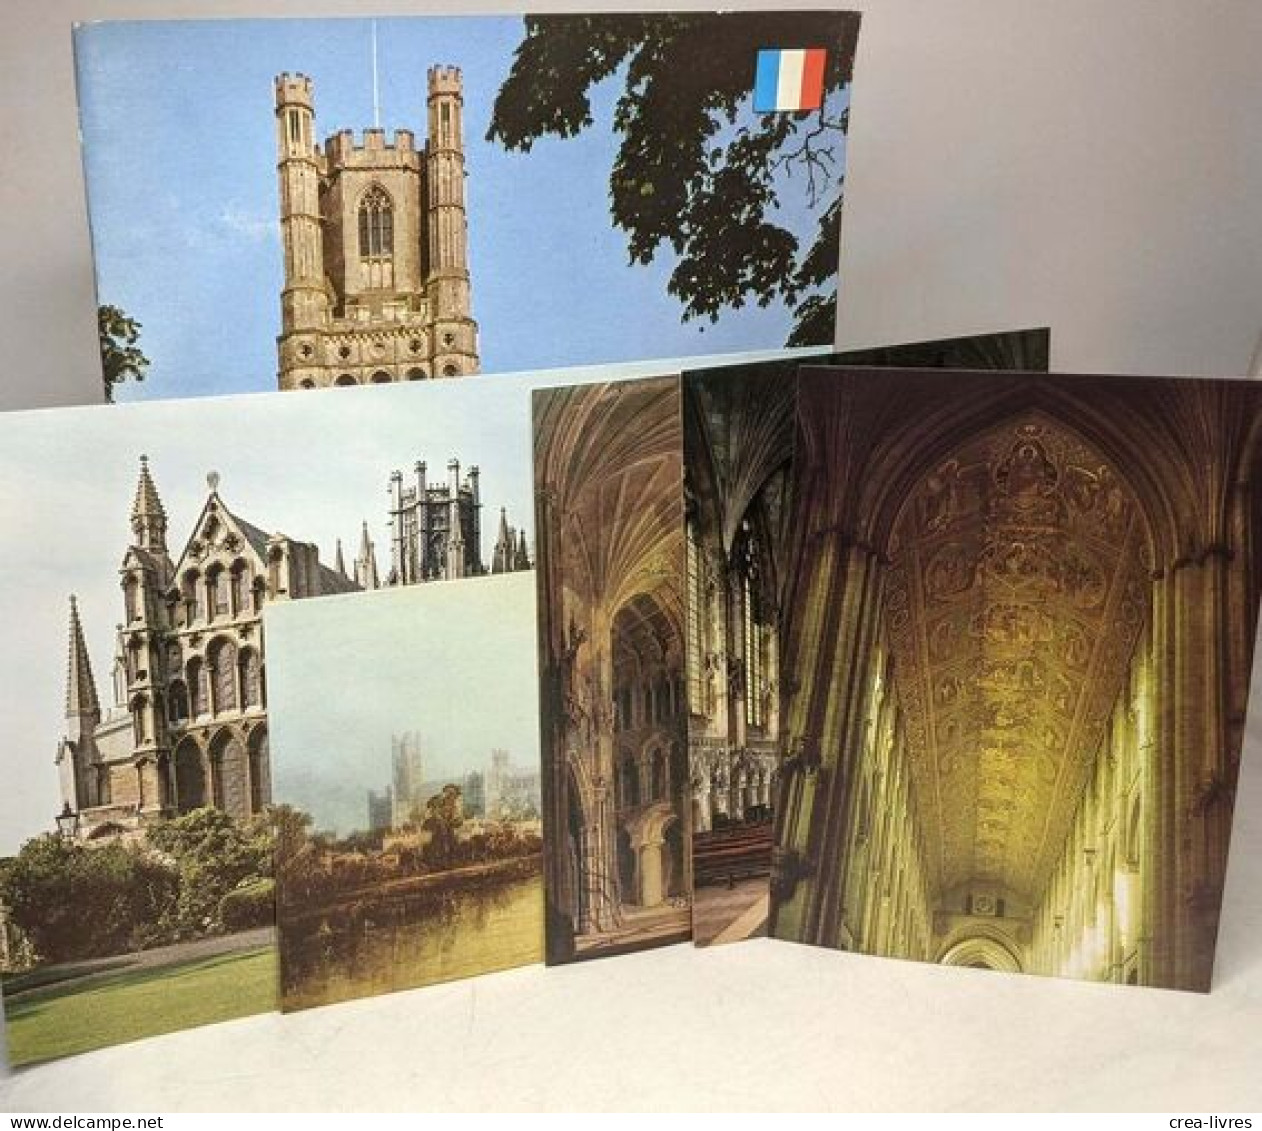 La Cathédrale D'Ely - Guide --- Avec Cartes Postales - Tourism